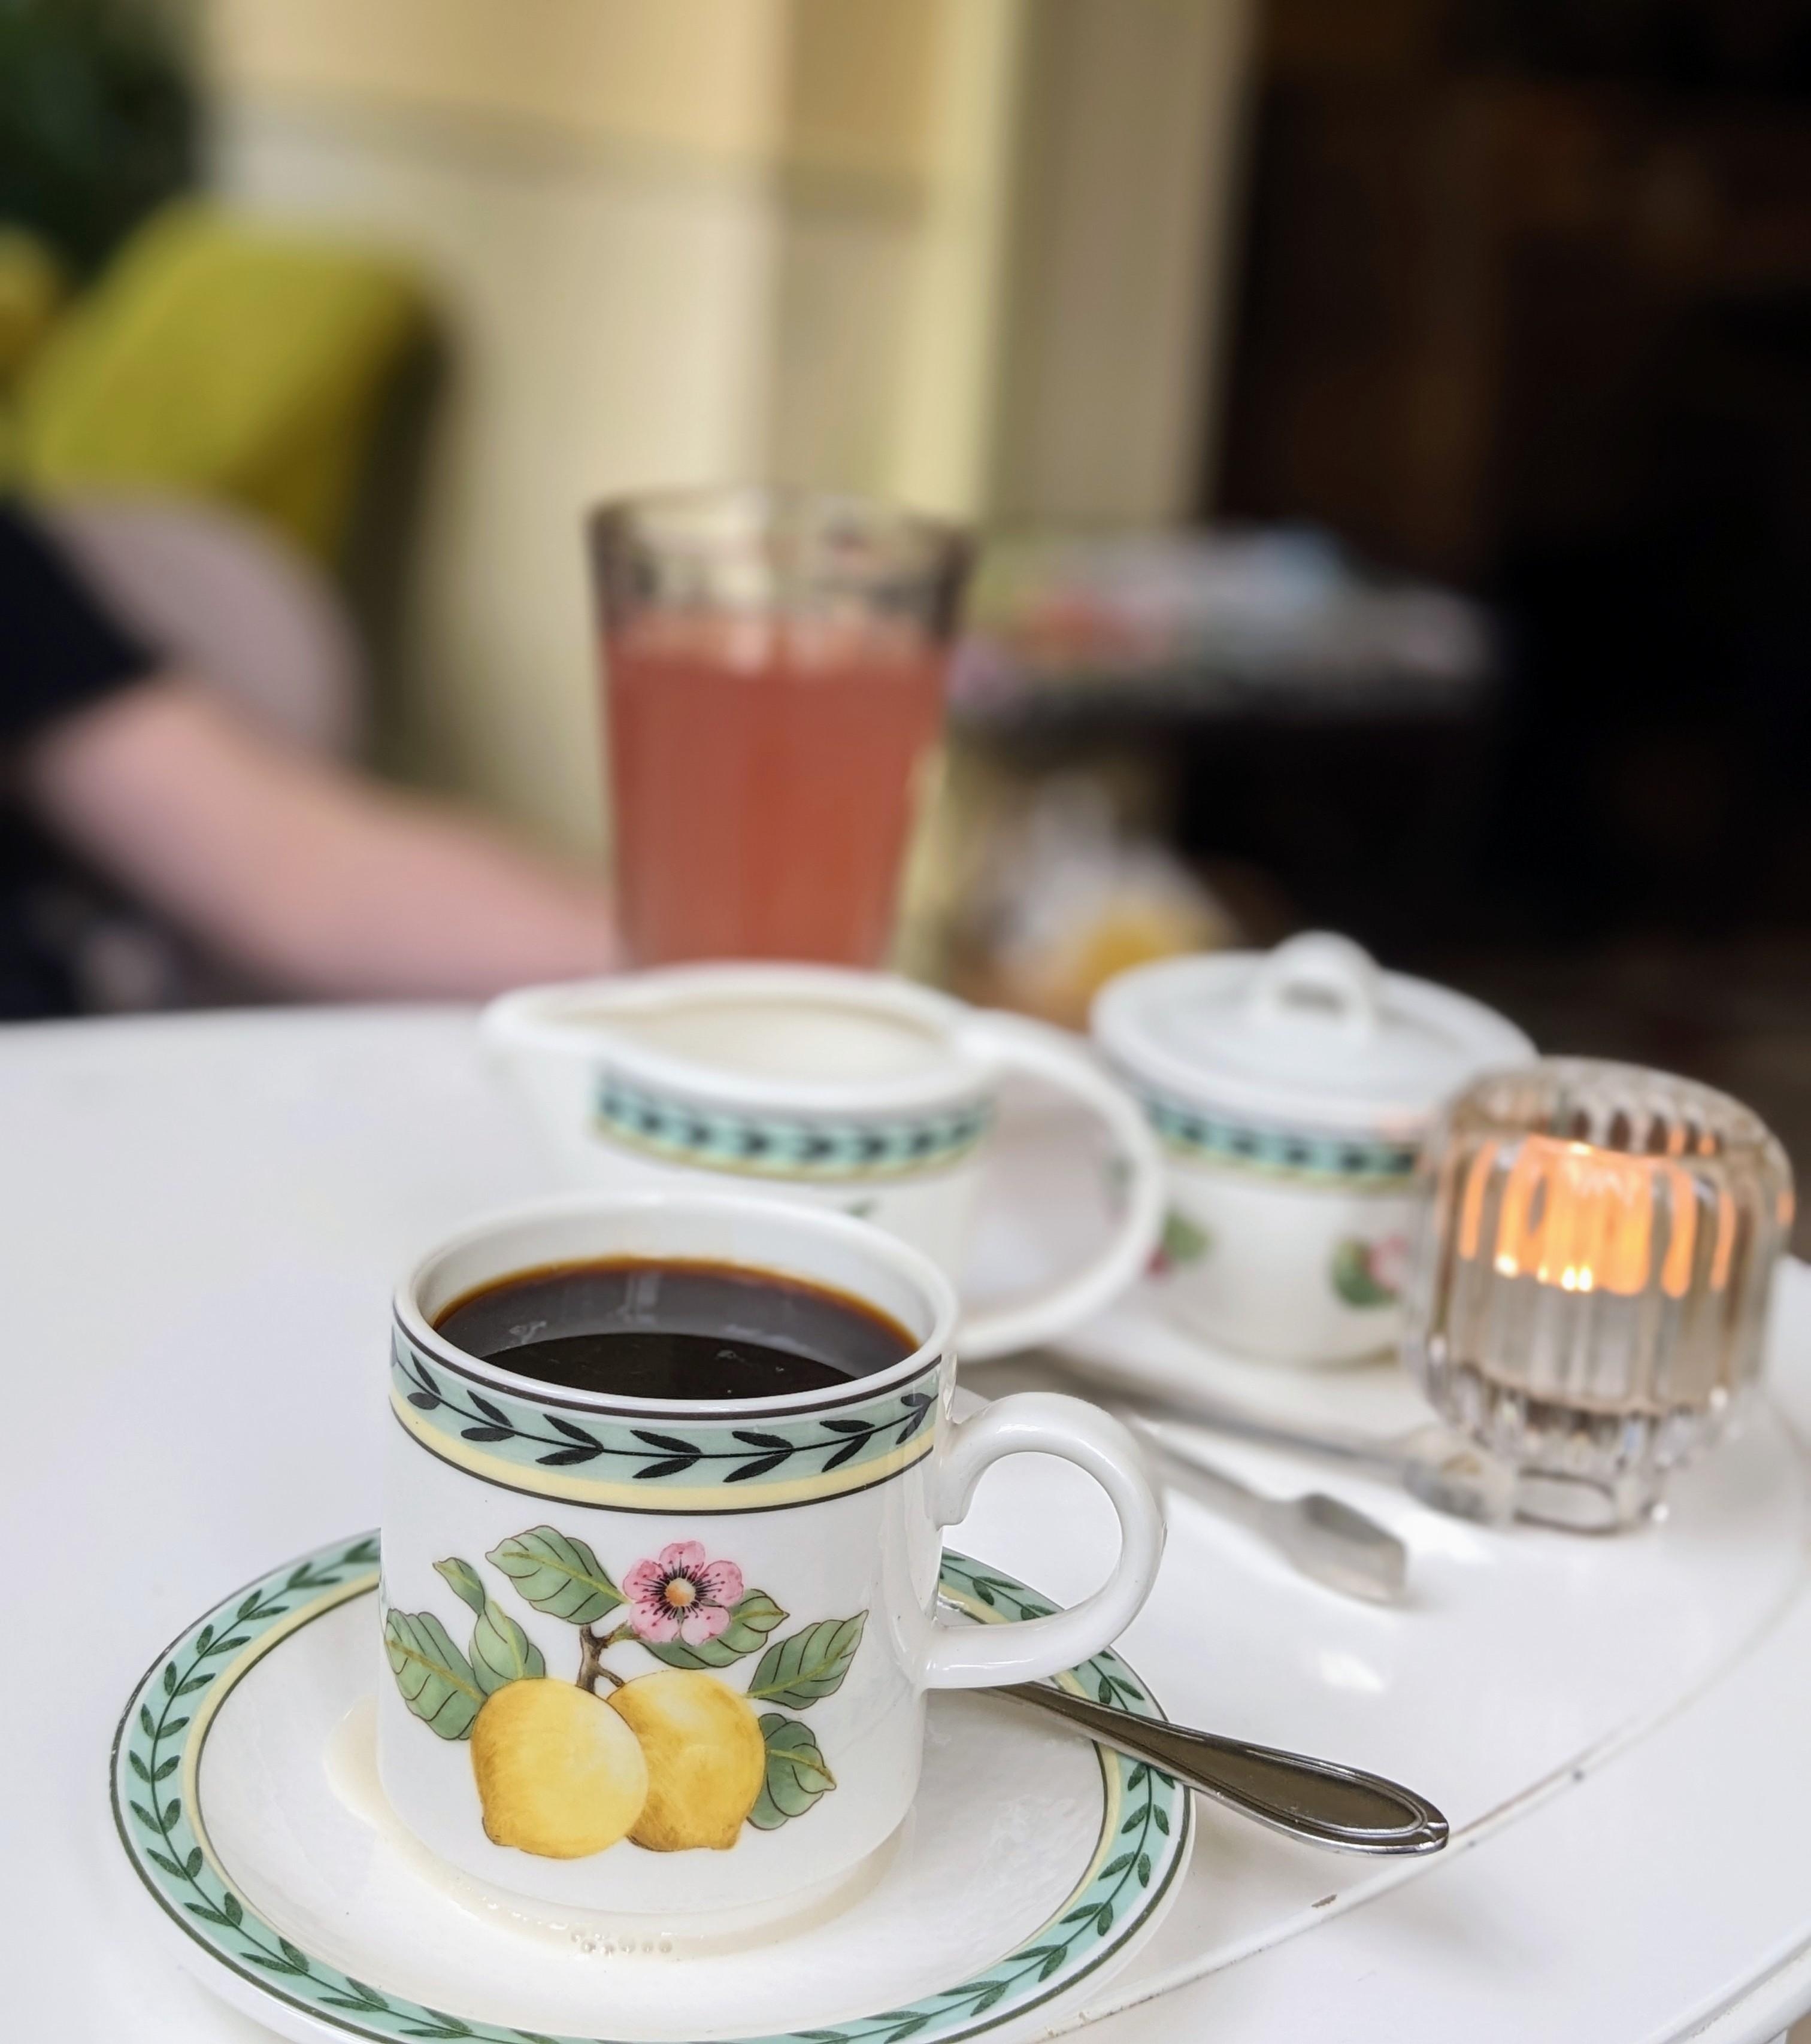 Einen leckeren Filterkaffee mit Mandelmilch und eine Rhabarber Schorle genießen.☕🍃

#kaffee #coffee #kaffeelover #mandelmilch #café #rhabarber